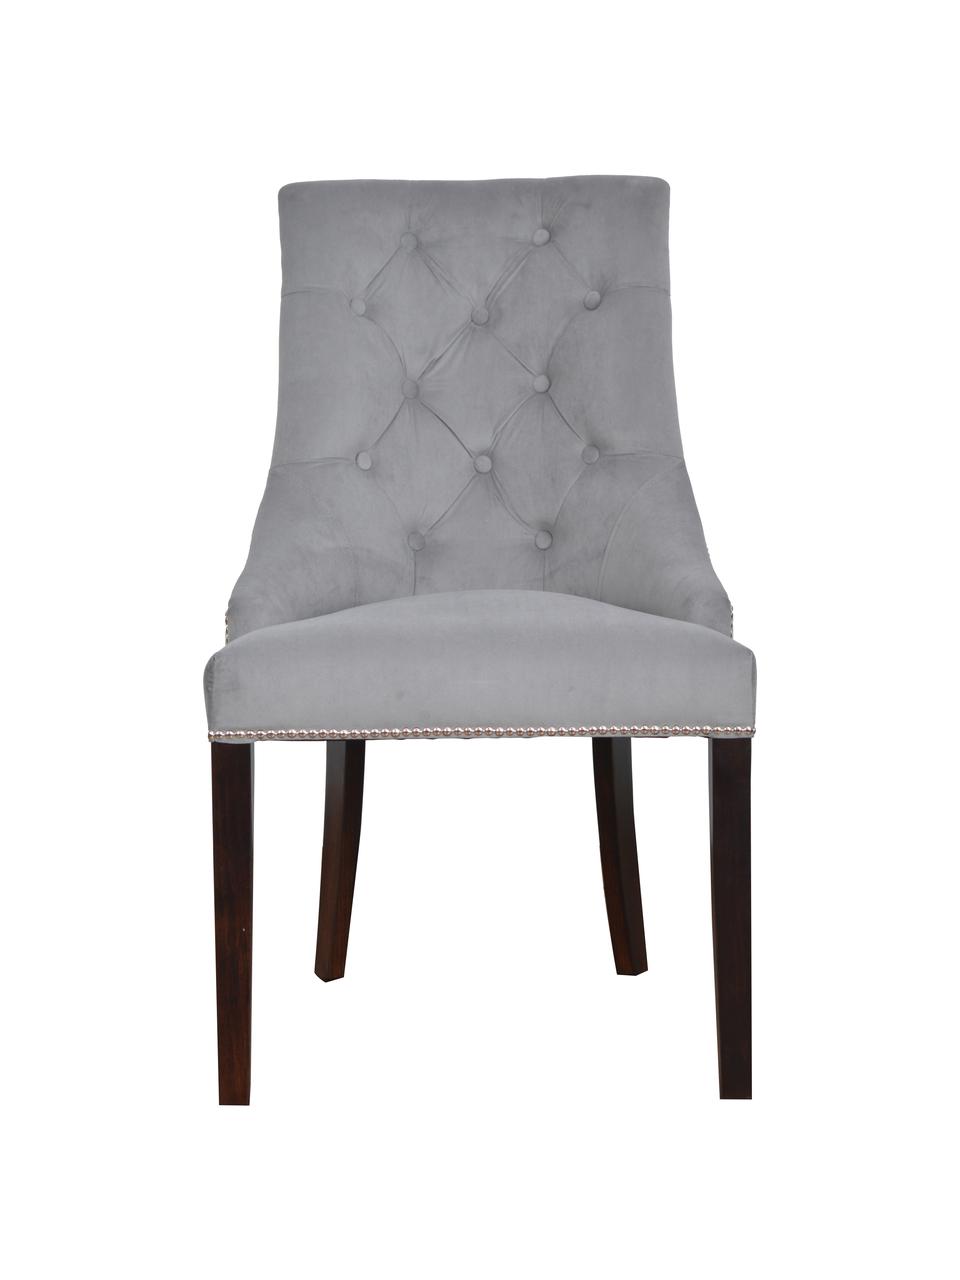 Krzesło tapicerowane z aksamitu Madam, Tapicerka: aksamit (100% poliester), Szary aksamit, Nogi: ciemny brązowy, S 56 x G 64 cm